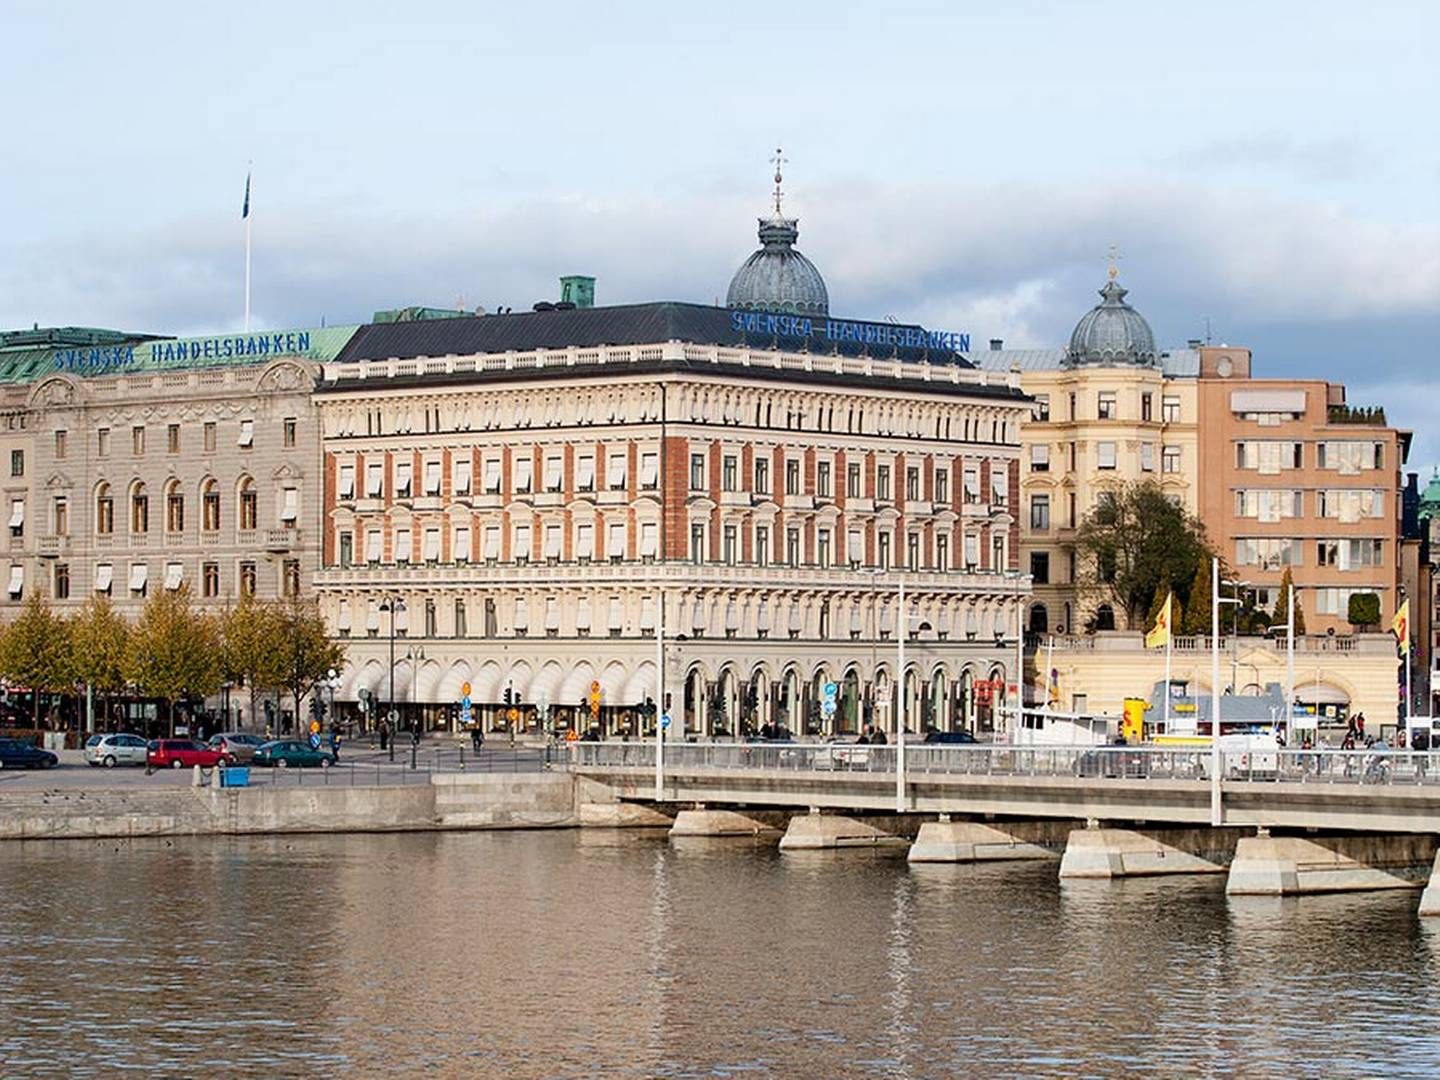 Handelsbankens hovedkontor i Stockholm. Banken er blandt de største i Sverige. | Foto: Handelsbanken / PR